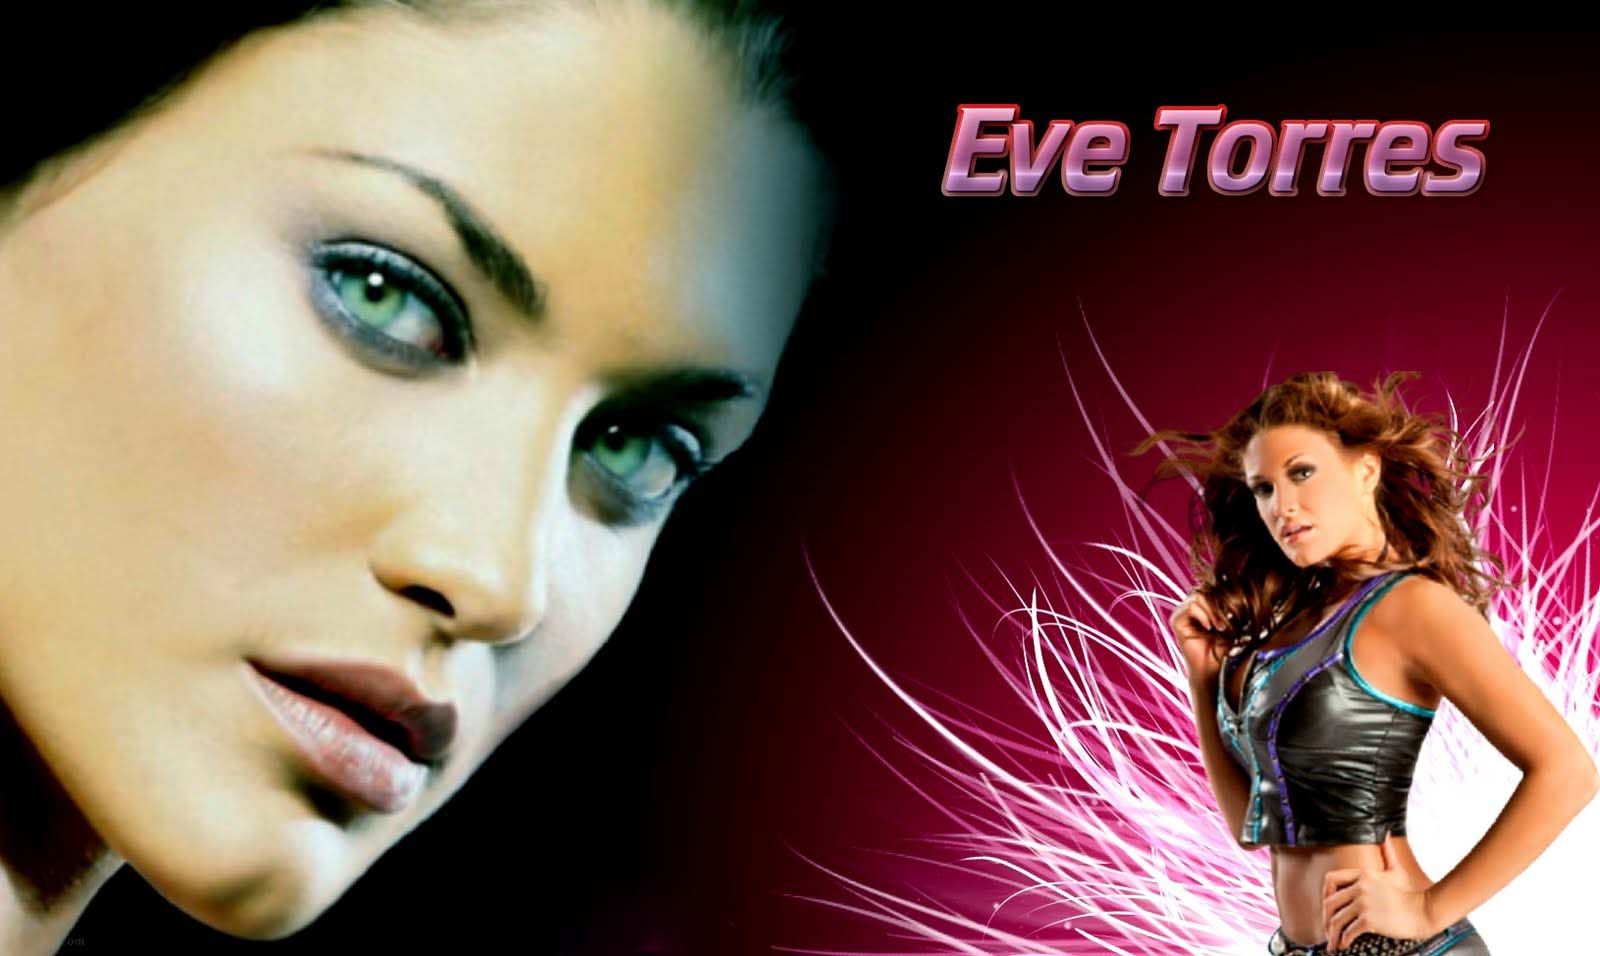 Wallpaper of Eve Torres